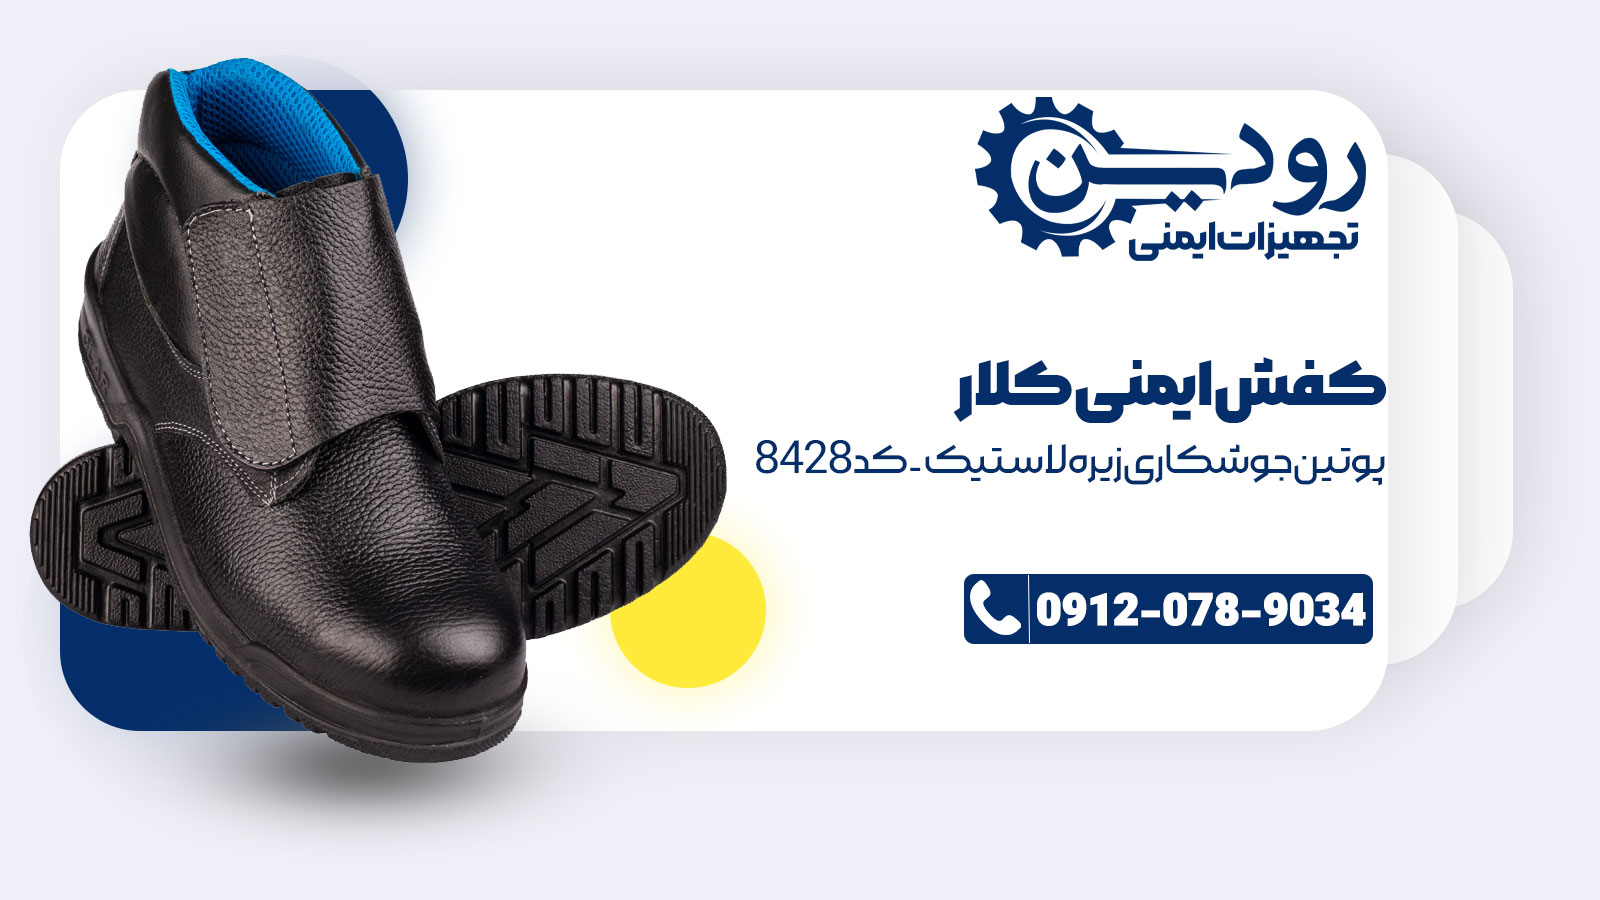 خرید و فروش کفش ایمنی کلار را کارخانه تجهیزات ایمنی رودین انجام میدهد.